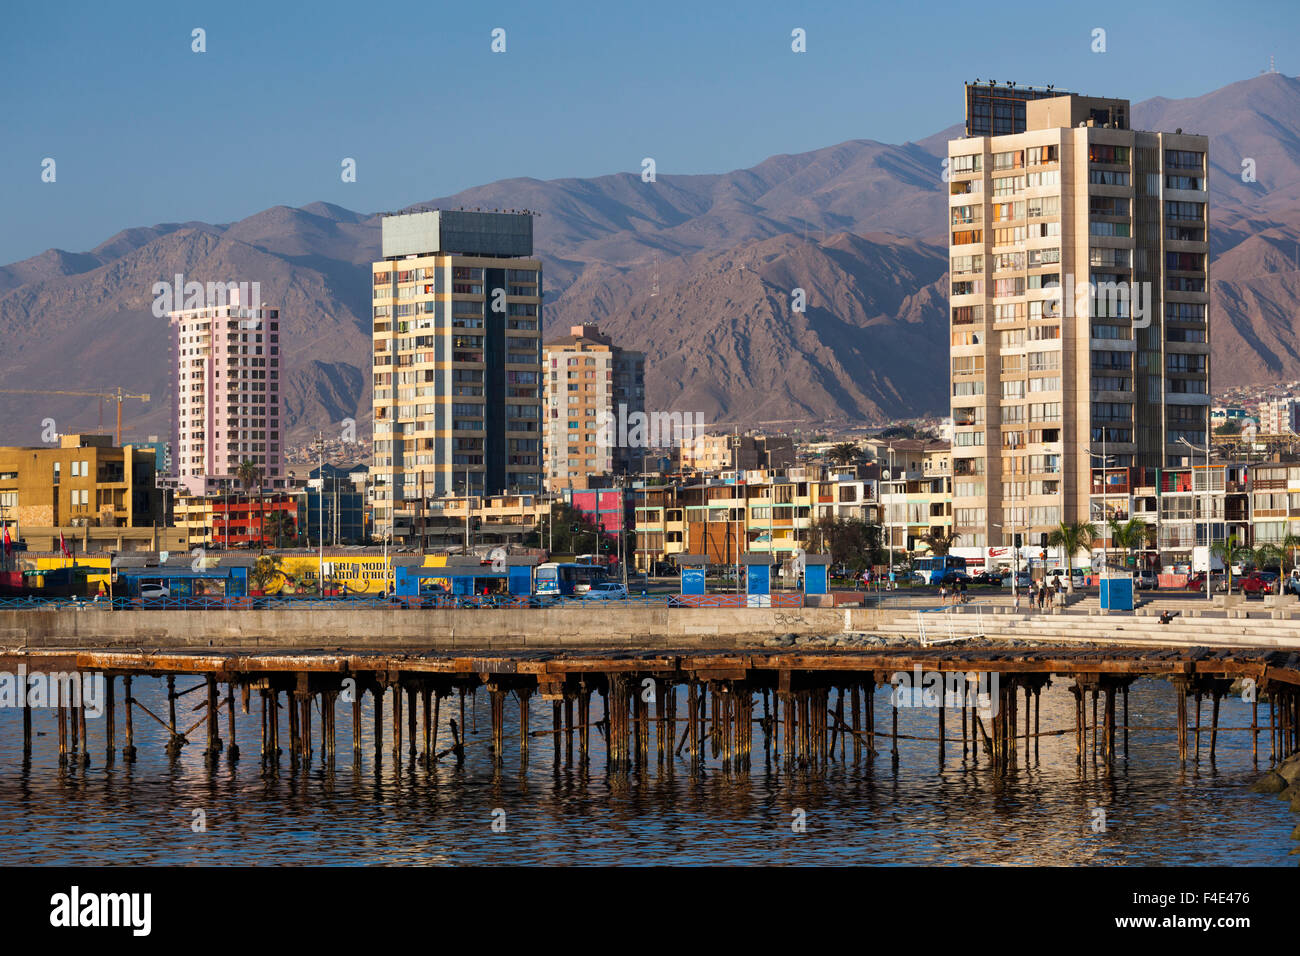 Le Chili, Antofagasta, port avec l'ancienne société Milbourne Clark pier, salpêtre coucher du soleil. Banque D'Images